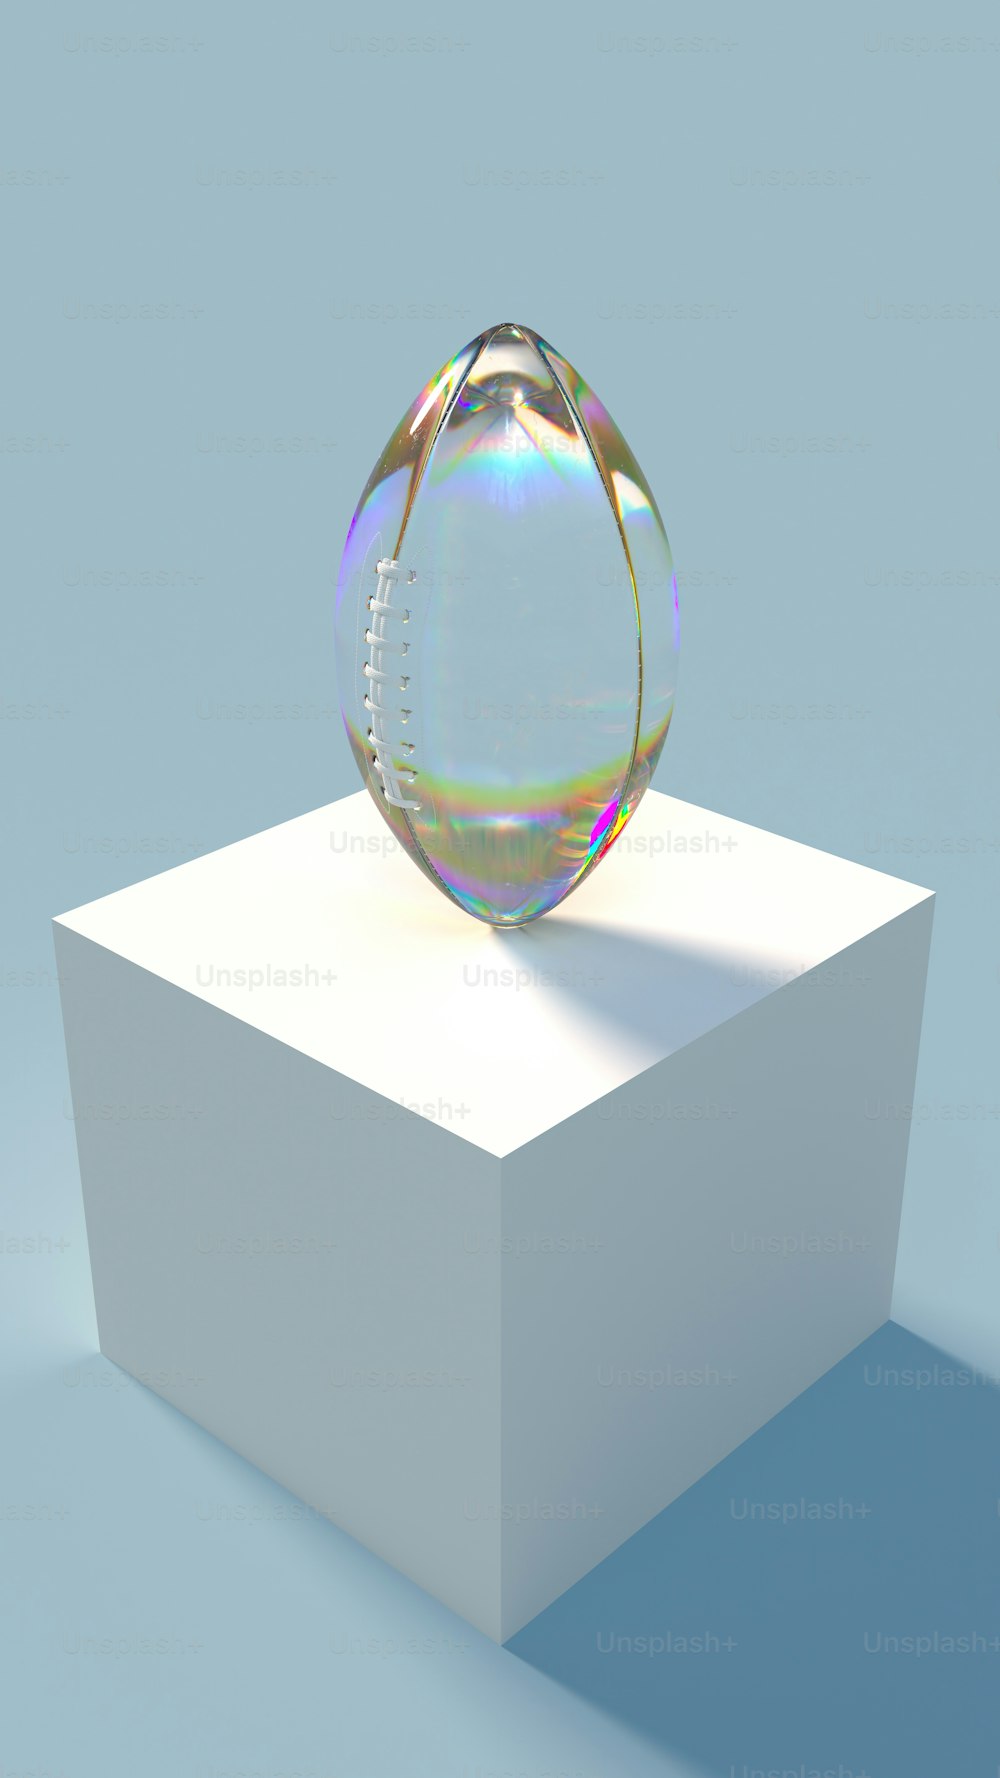 Una bola de cristal sentada encima de una caja blanca